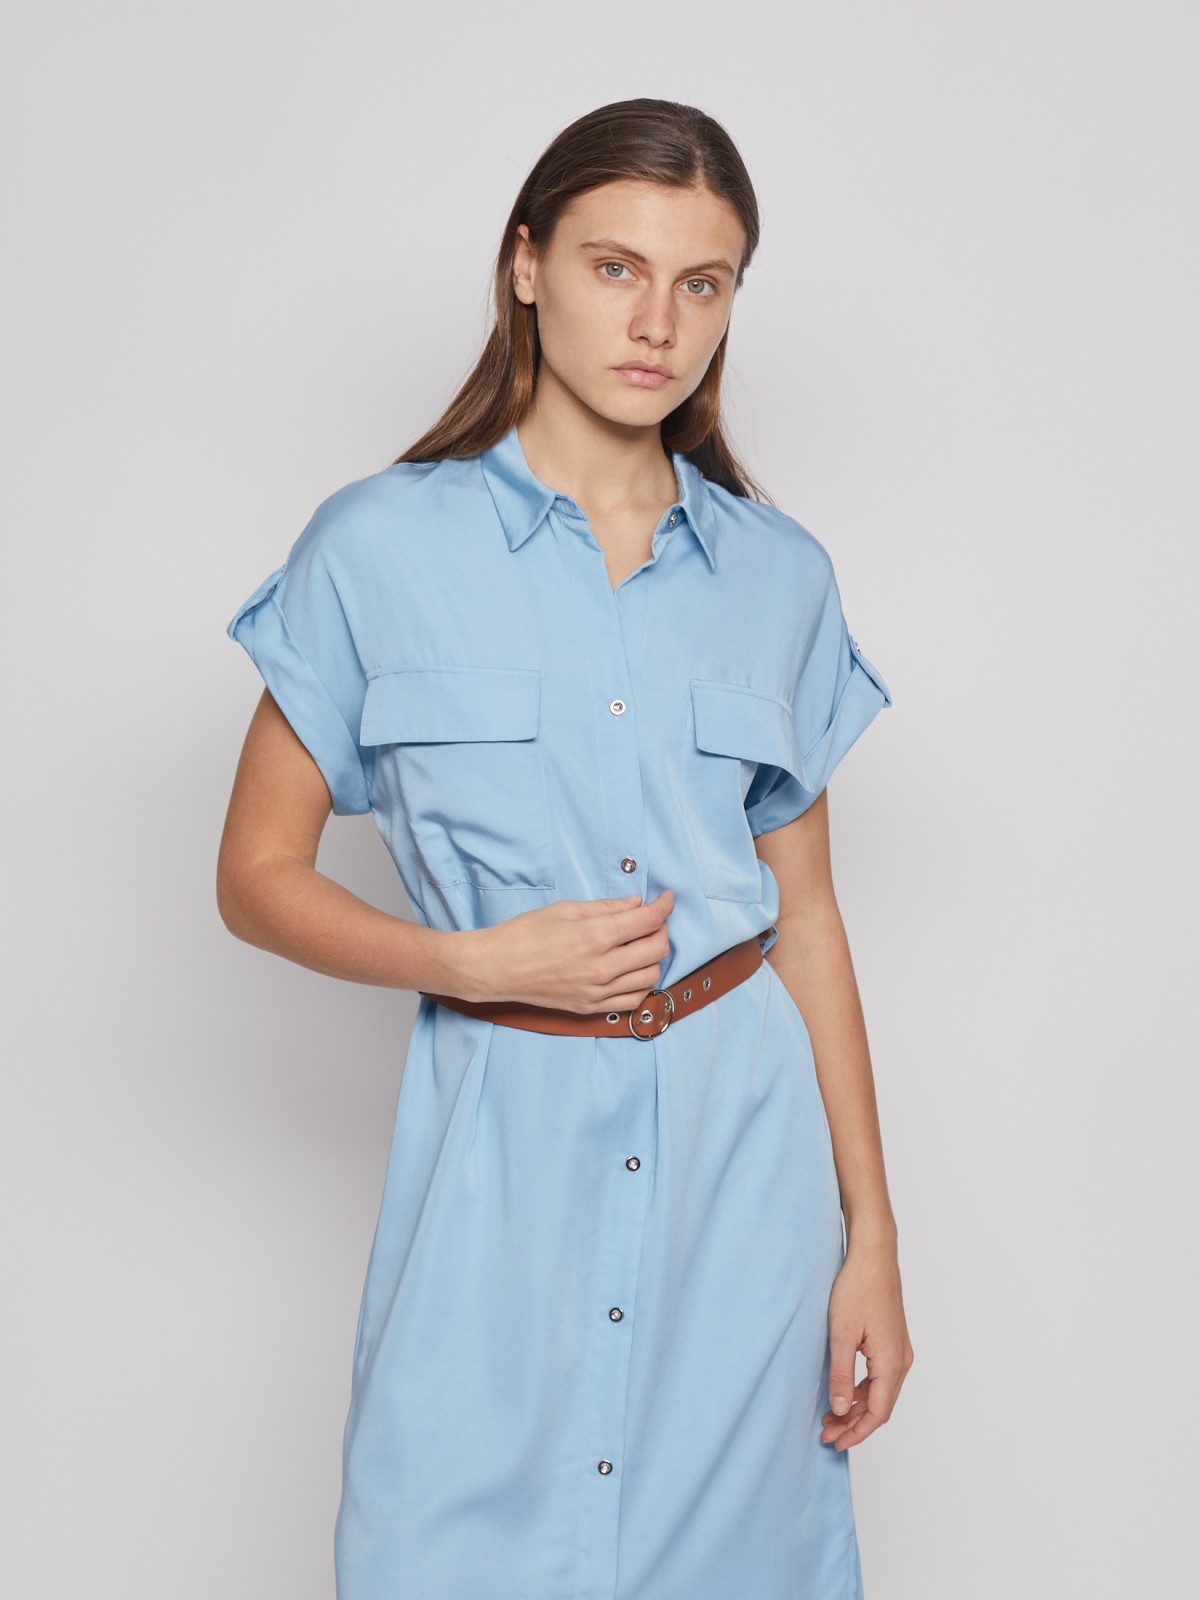 Платье-рубашка с ремнём zolla 022238259043, цвет светло-голубой, размер S - фото 5